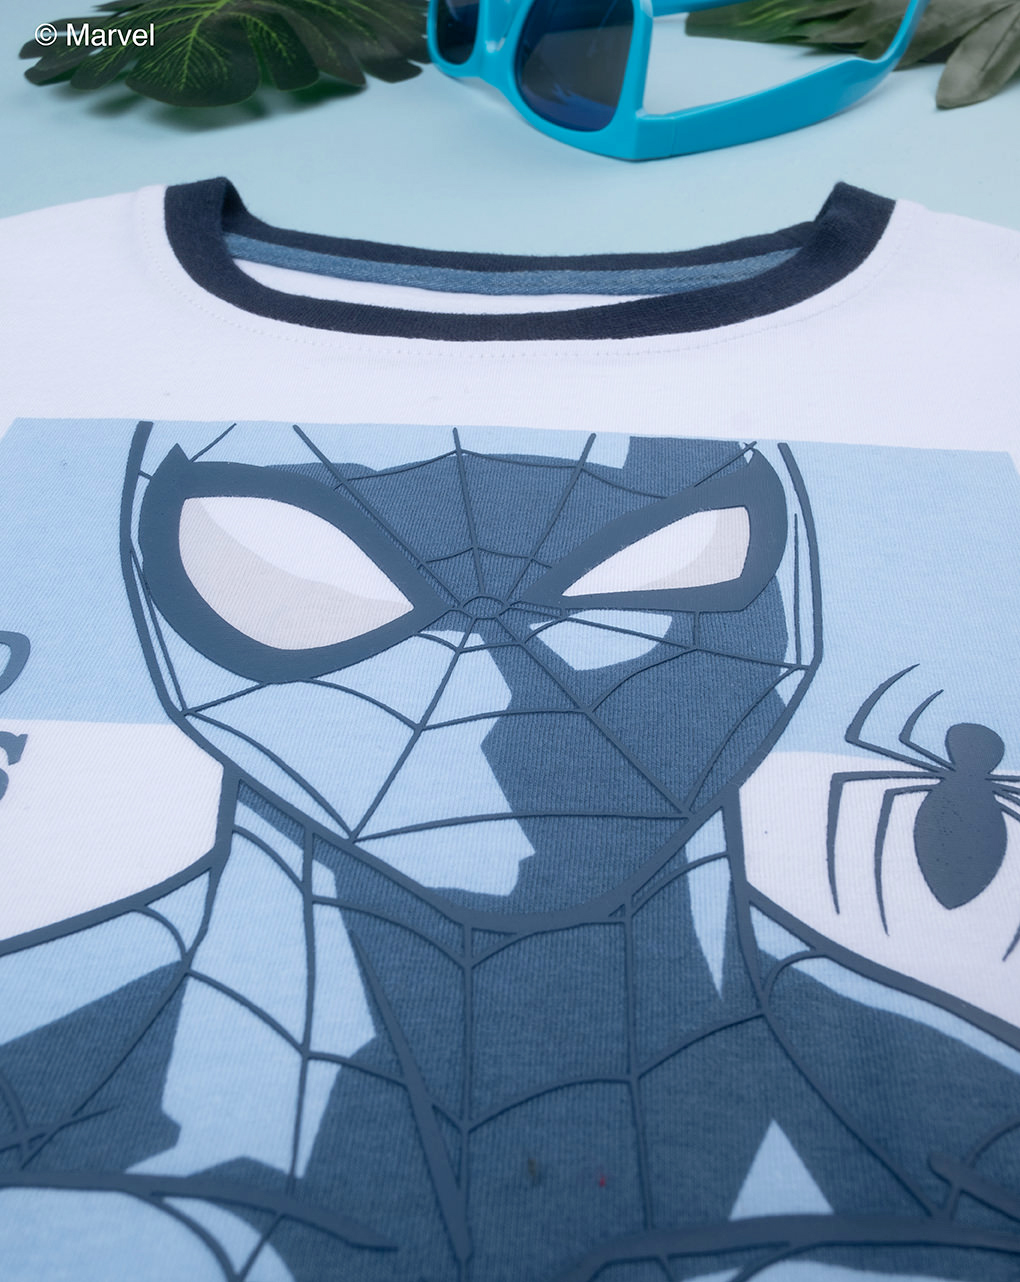 παιδική μπλούζα λευκή με τον spiderman για αγόρι - Prénatal